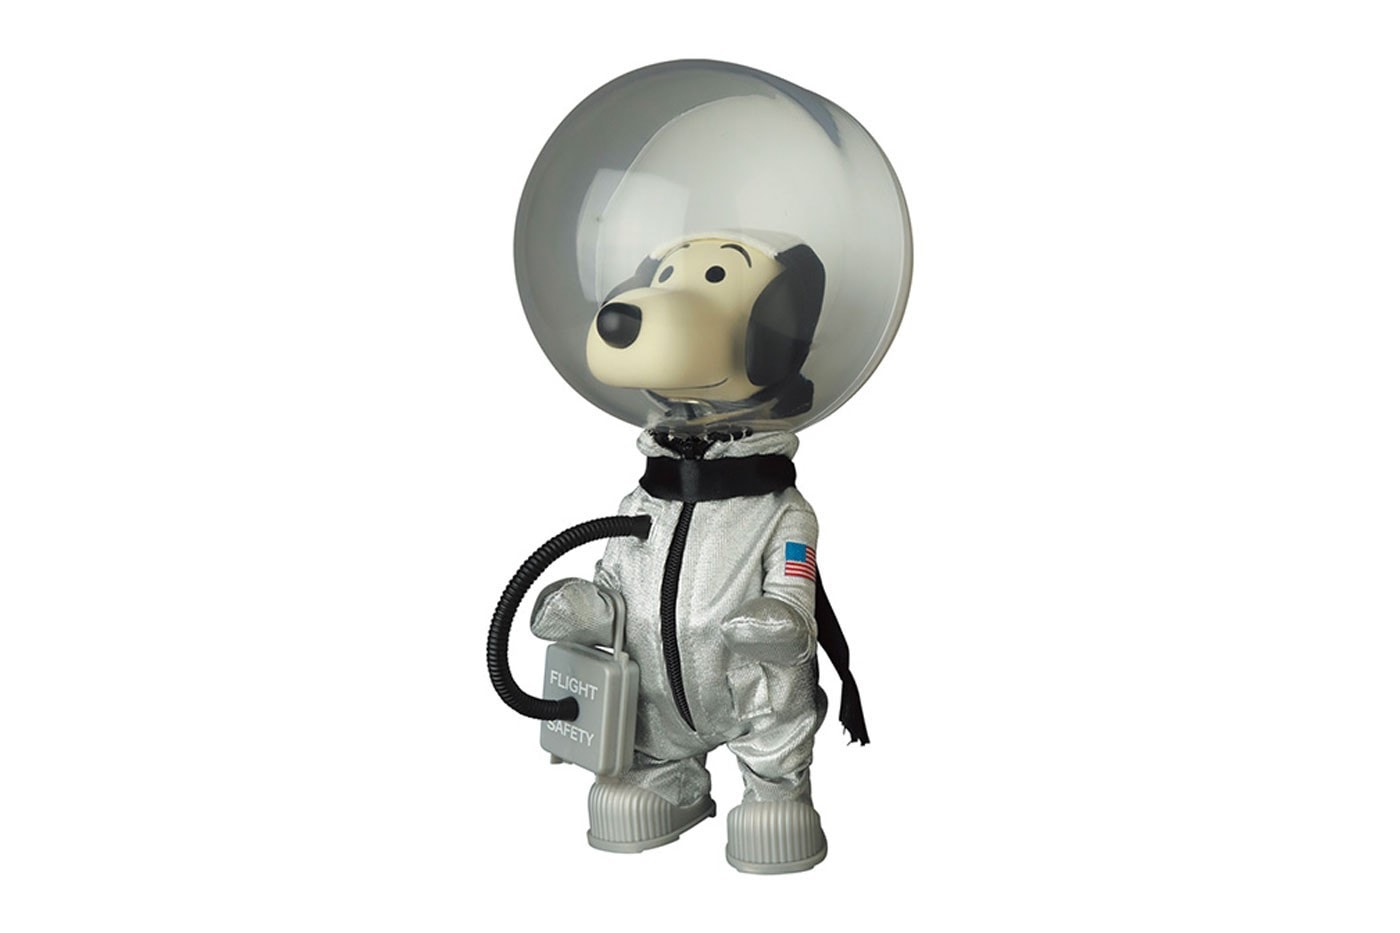 Medicom Toy 推出 1950 年代復刻《Peanuts》角色公仔